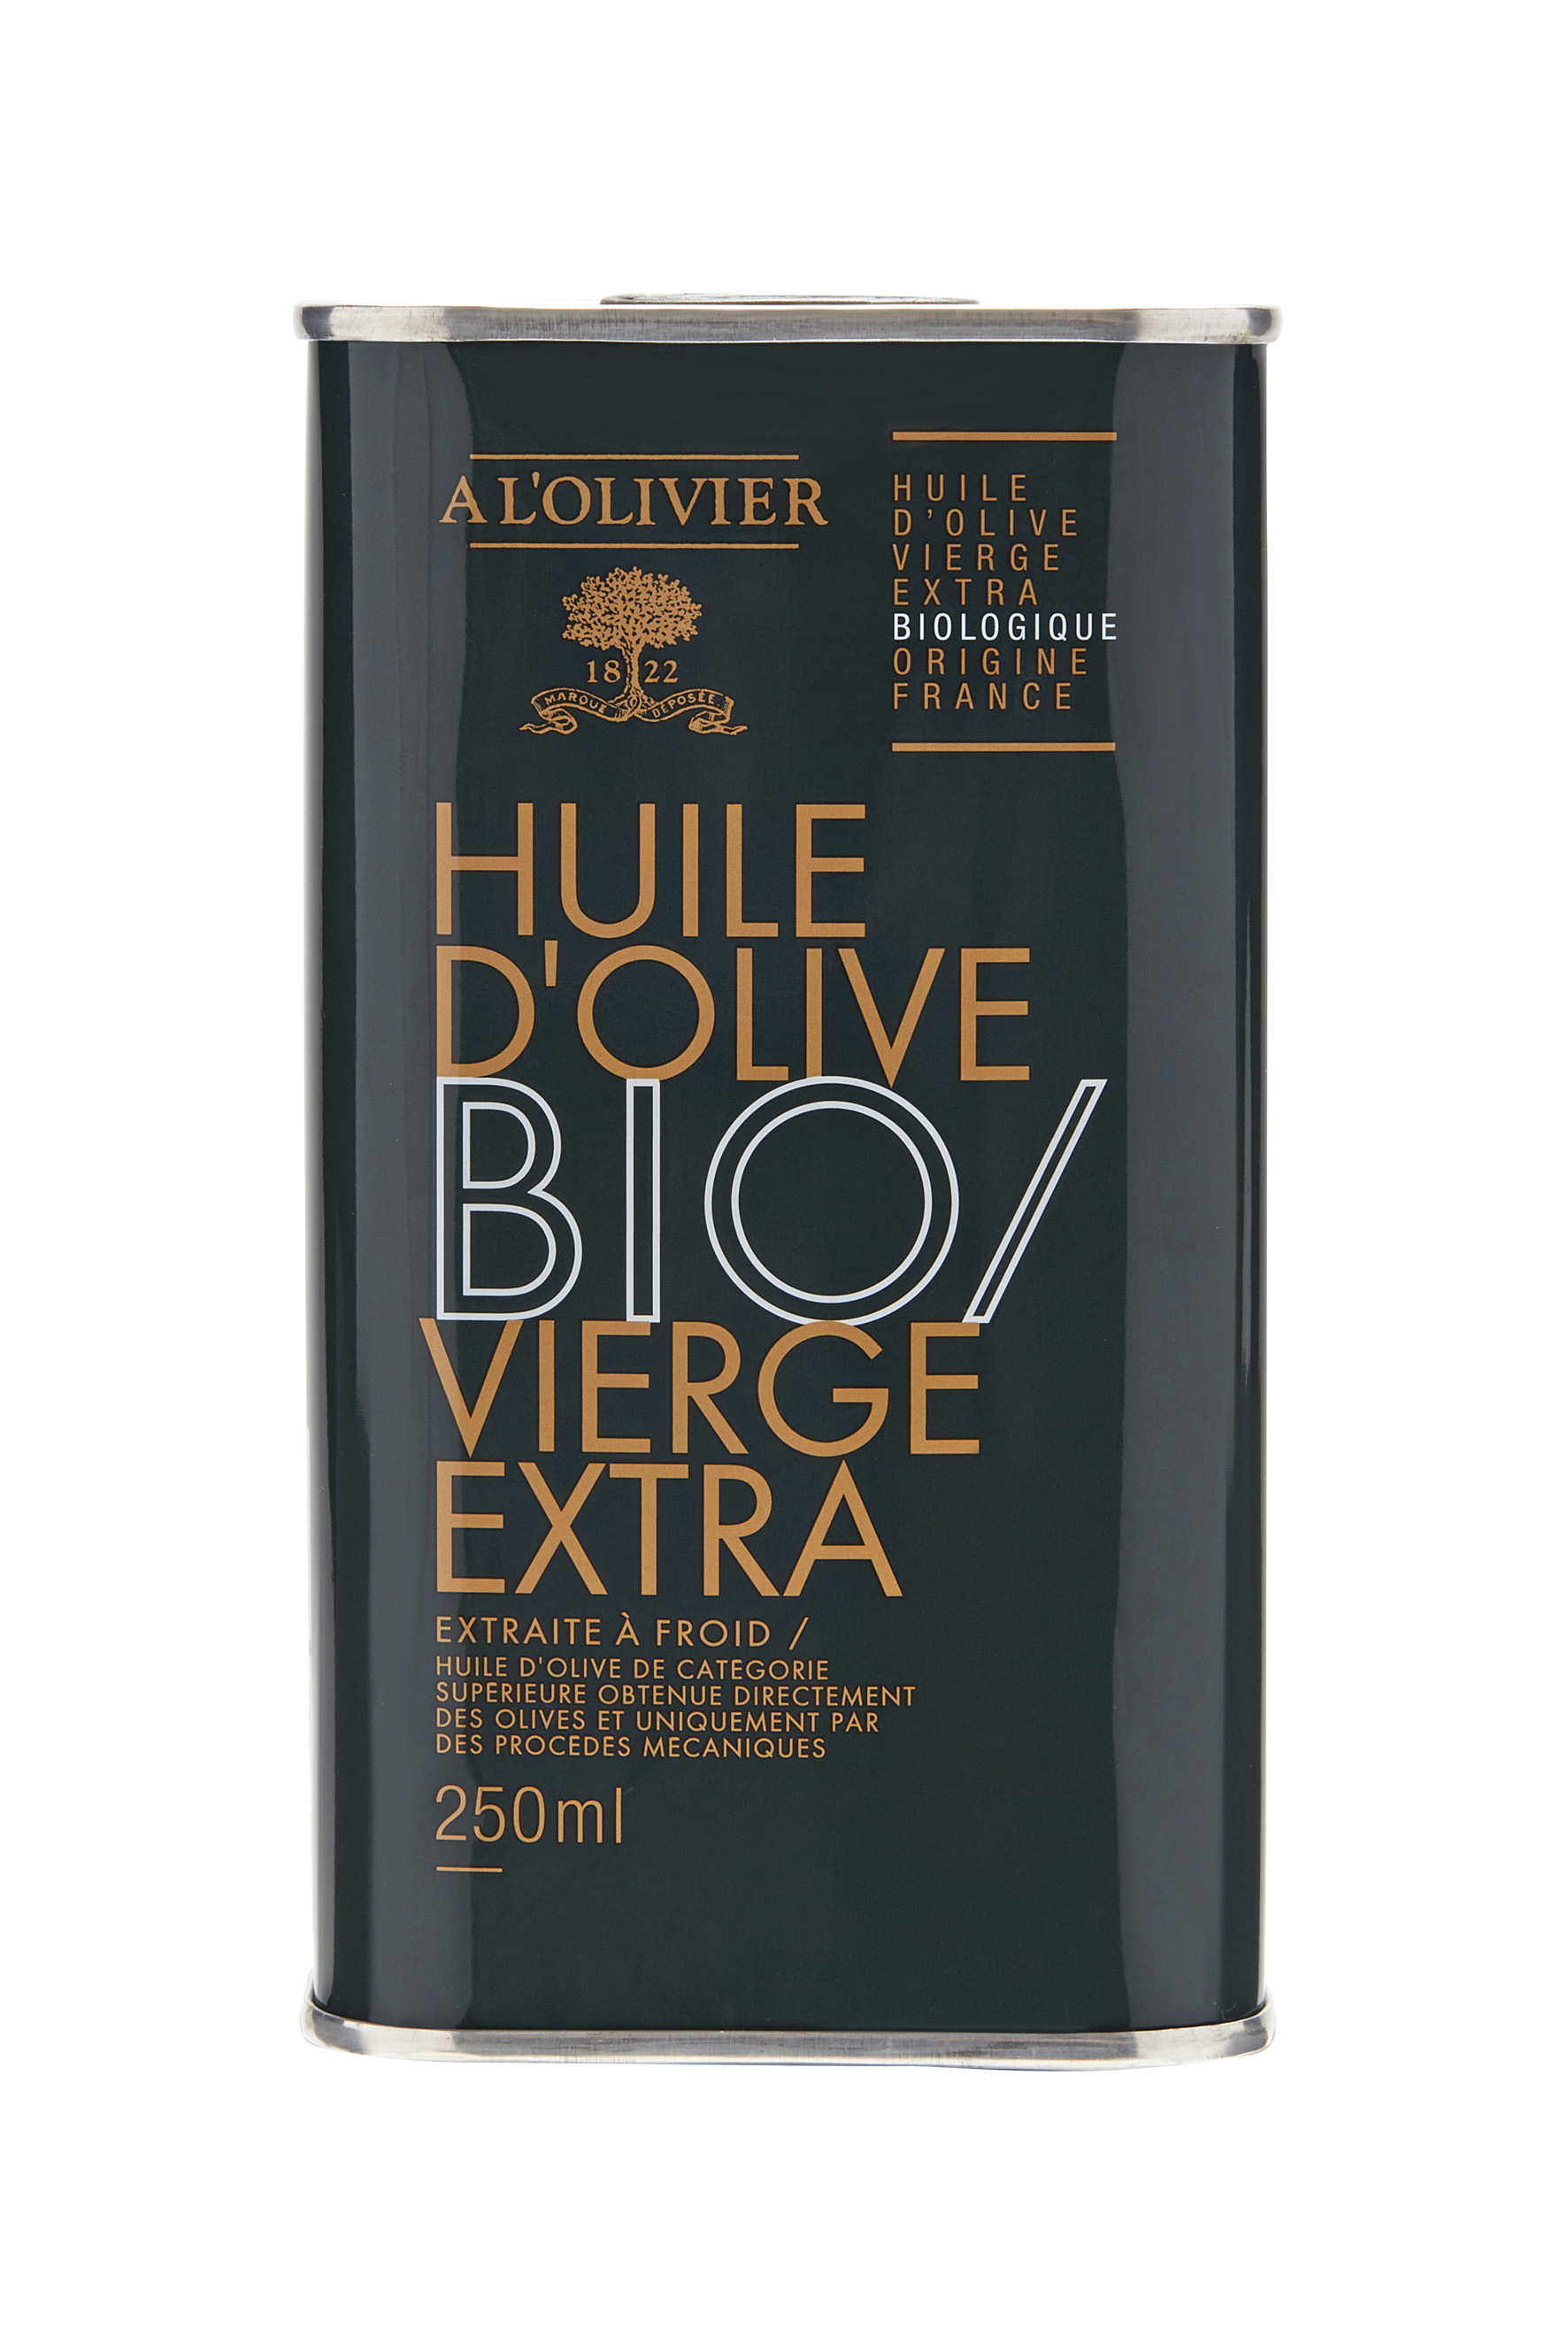 Huile d'olive Biologique Vierge Extra - A l'olivier - A l'Olivier Lyon